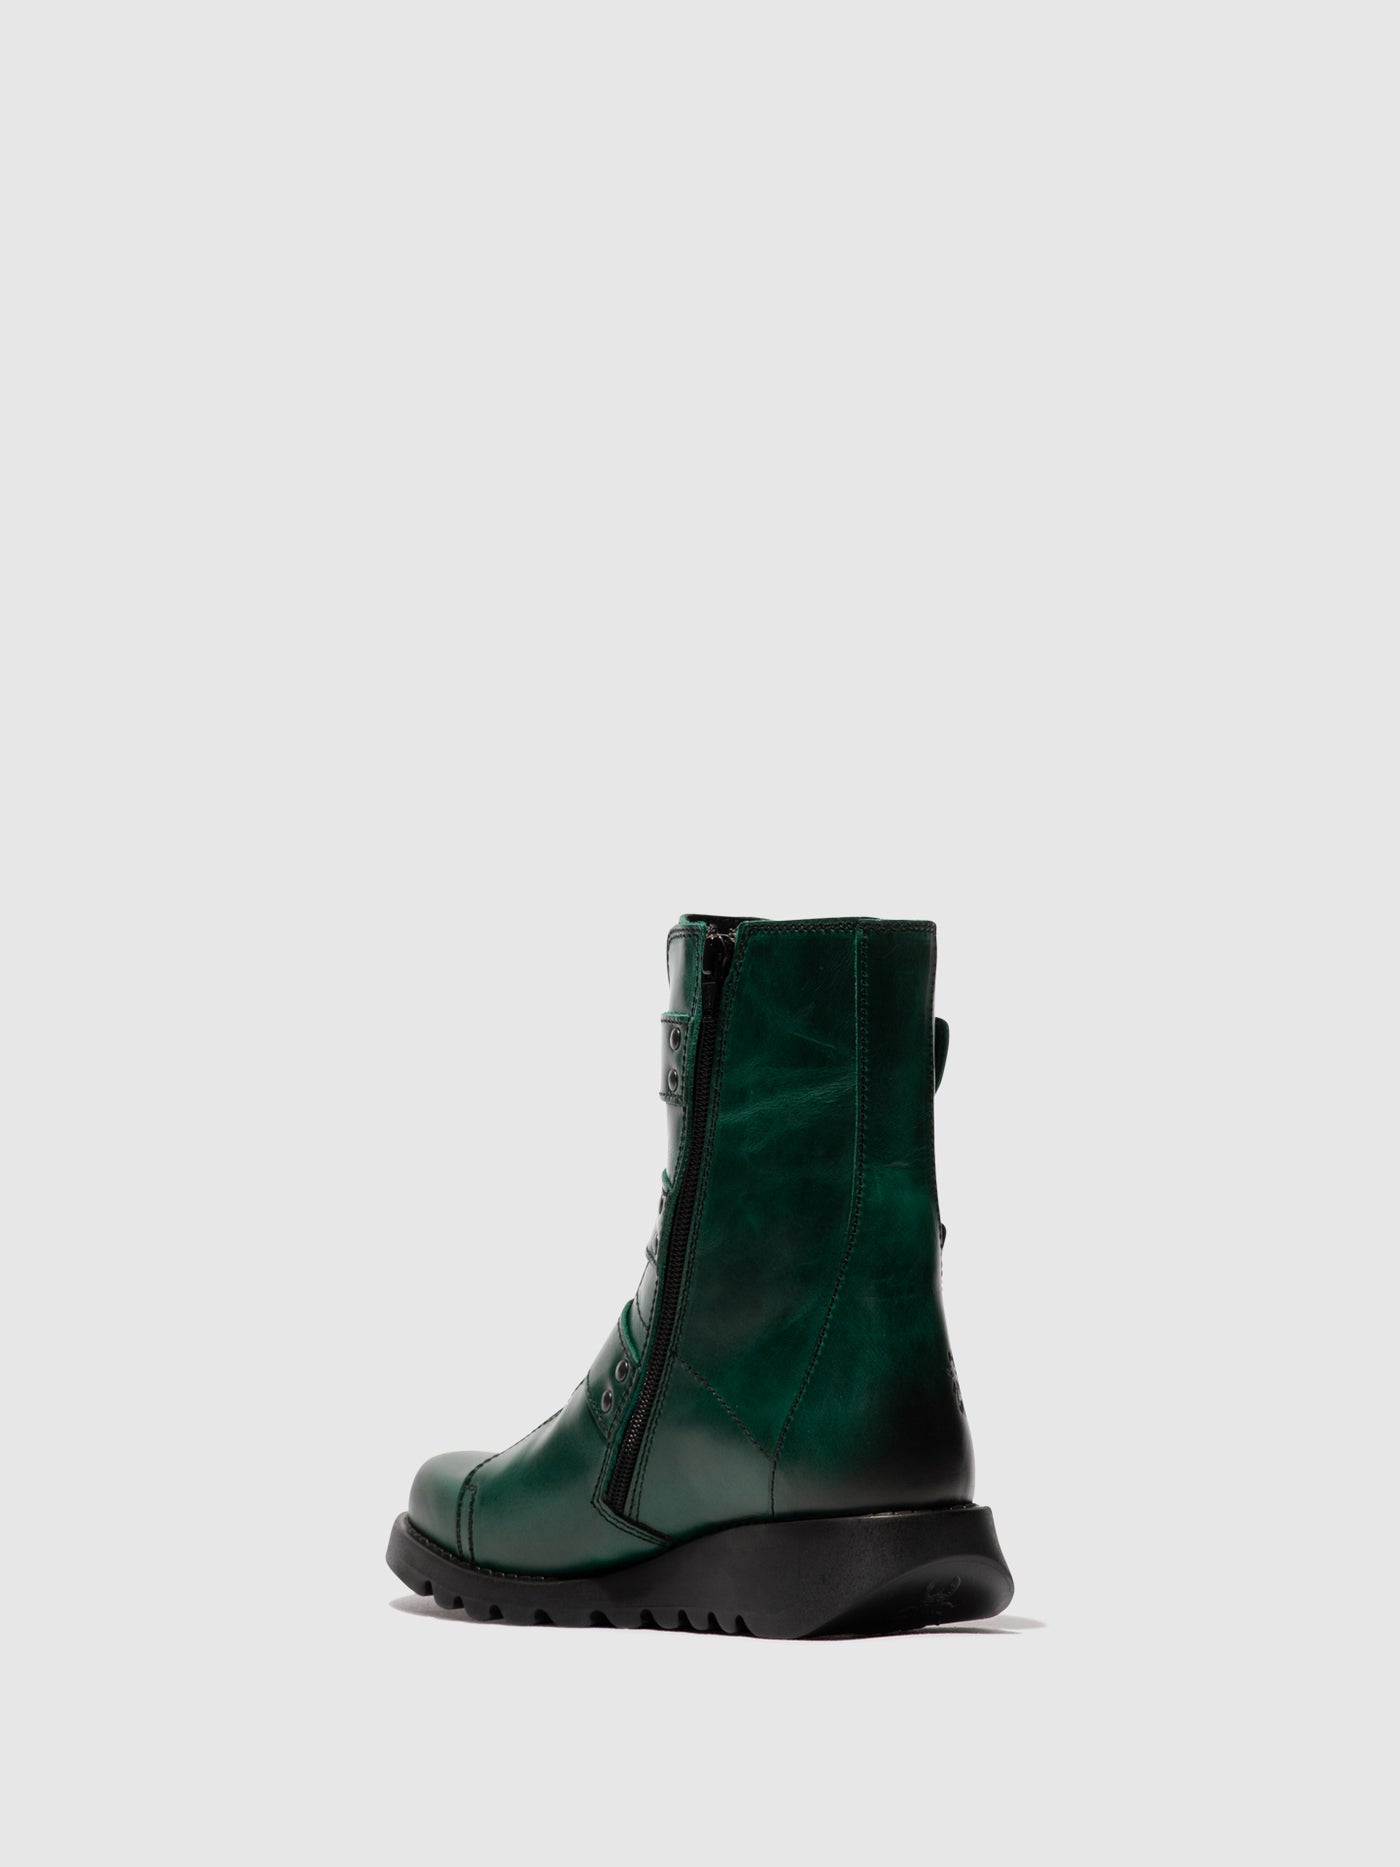 Buckle Ankle Boots SCOP110FLY SHAMROCK GREEN (BLACK SOLE)